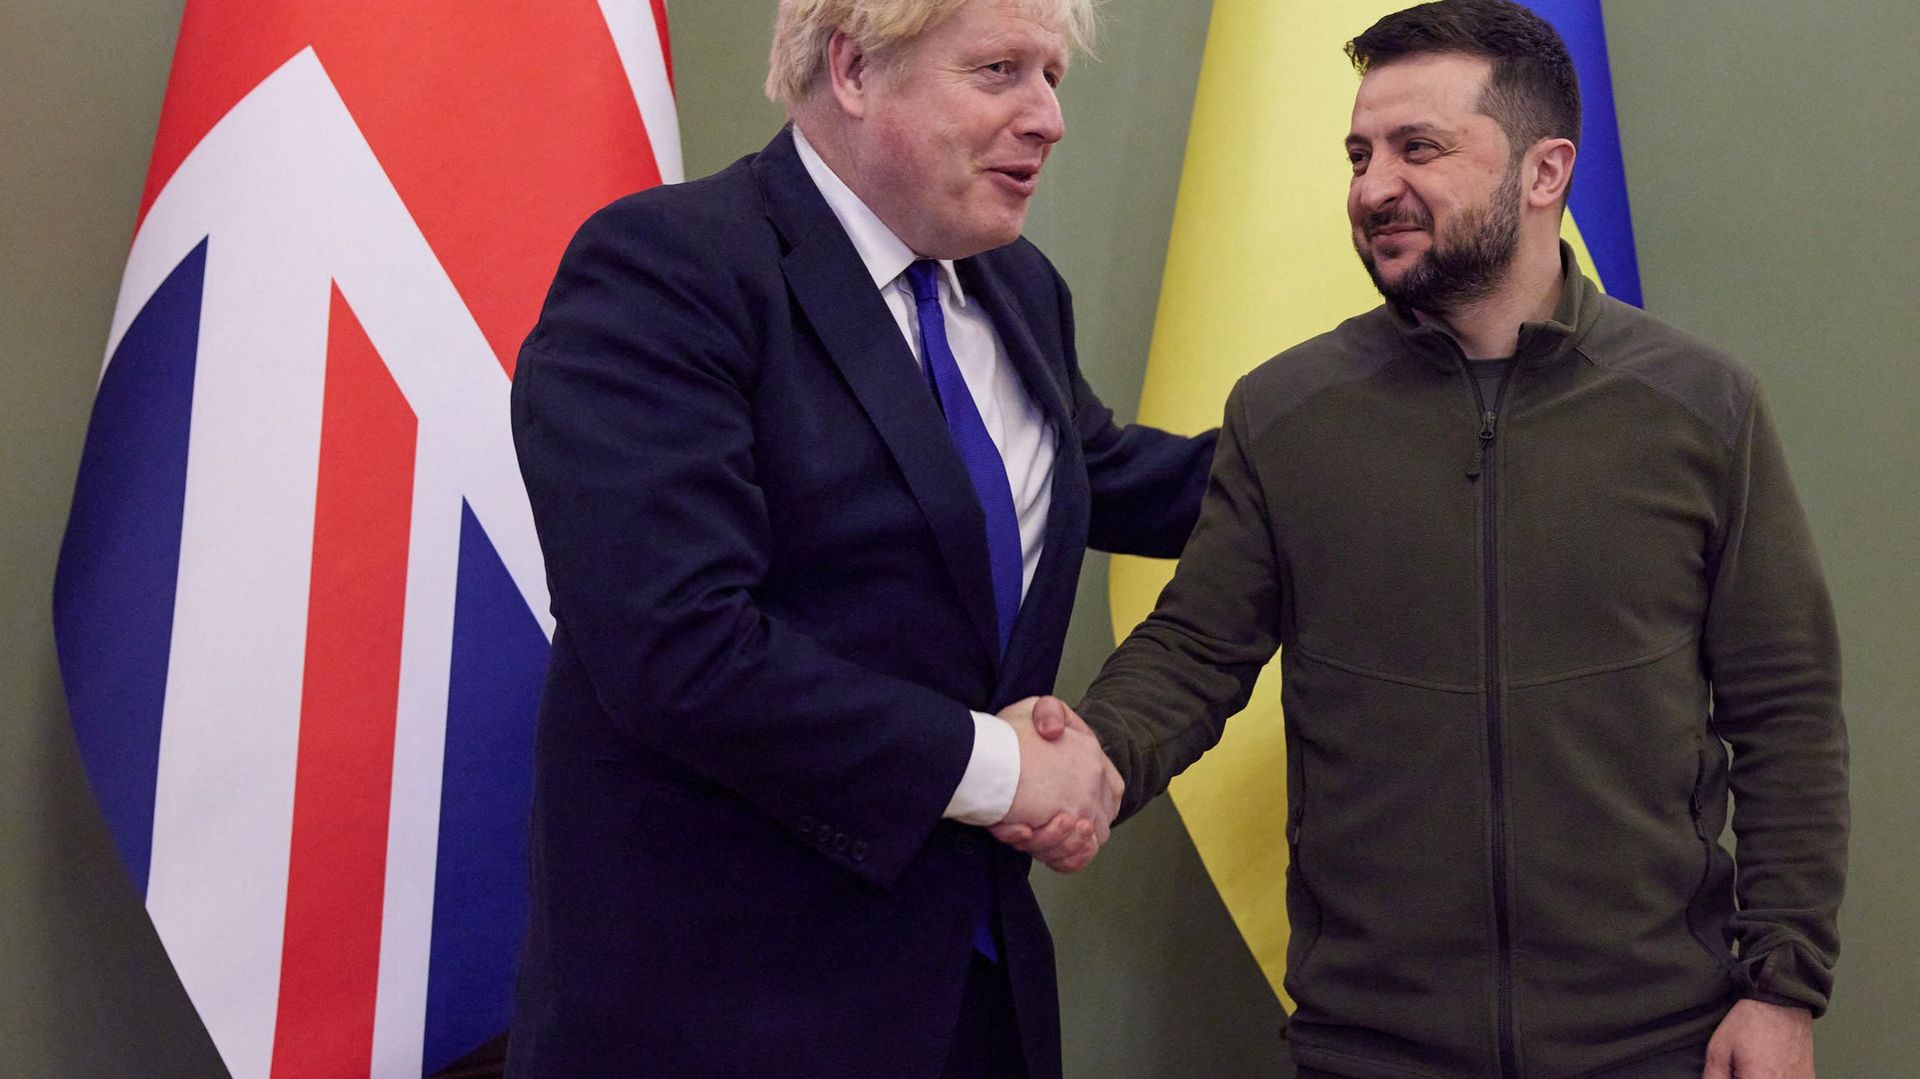 Cette photo prise et publiée le 9 avril 2022 par le service de presse présidentiel ukrainien montre le président ukrainien Volodymyr Zelensky (à droite) serrant la main du Premier ministre britannique Boris Johnson avant leur rencontre à Kiev.